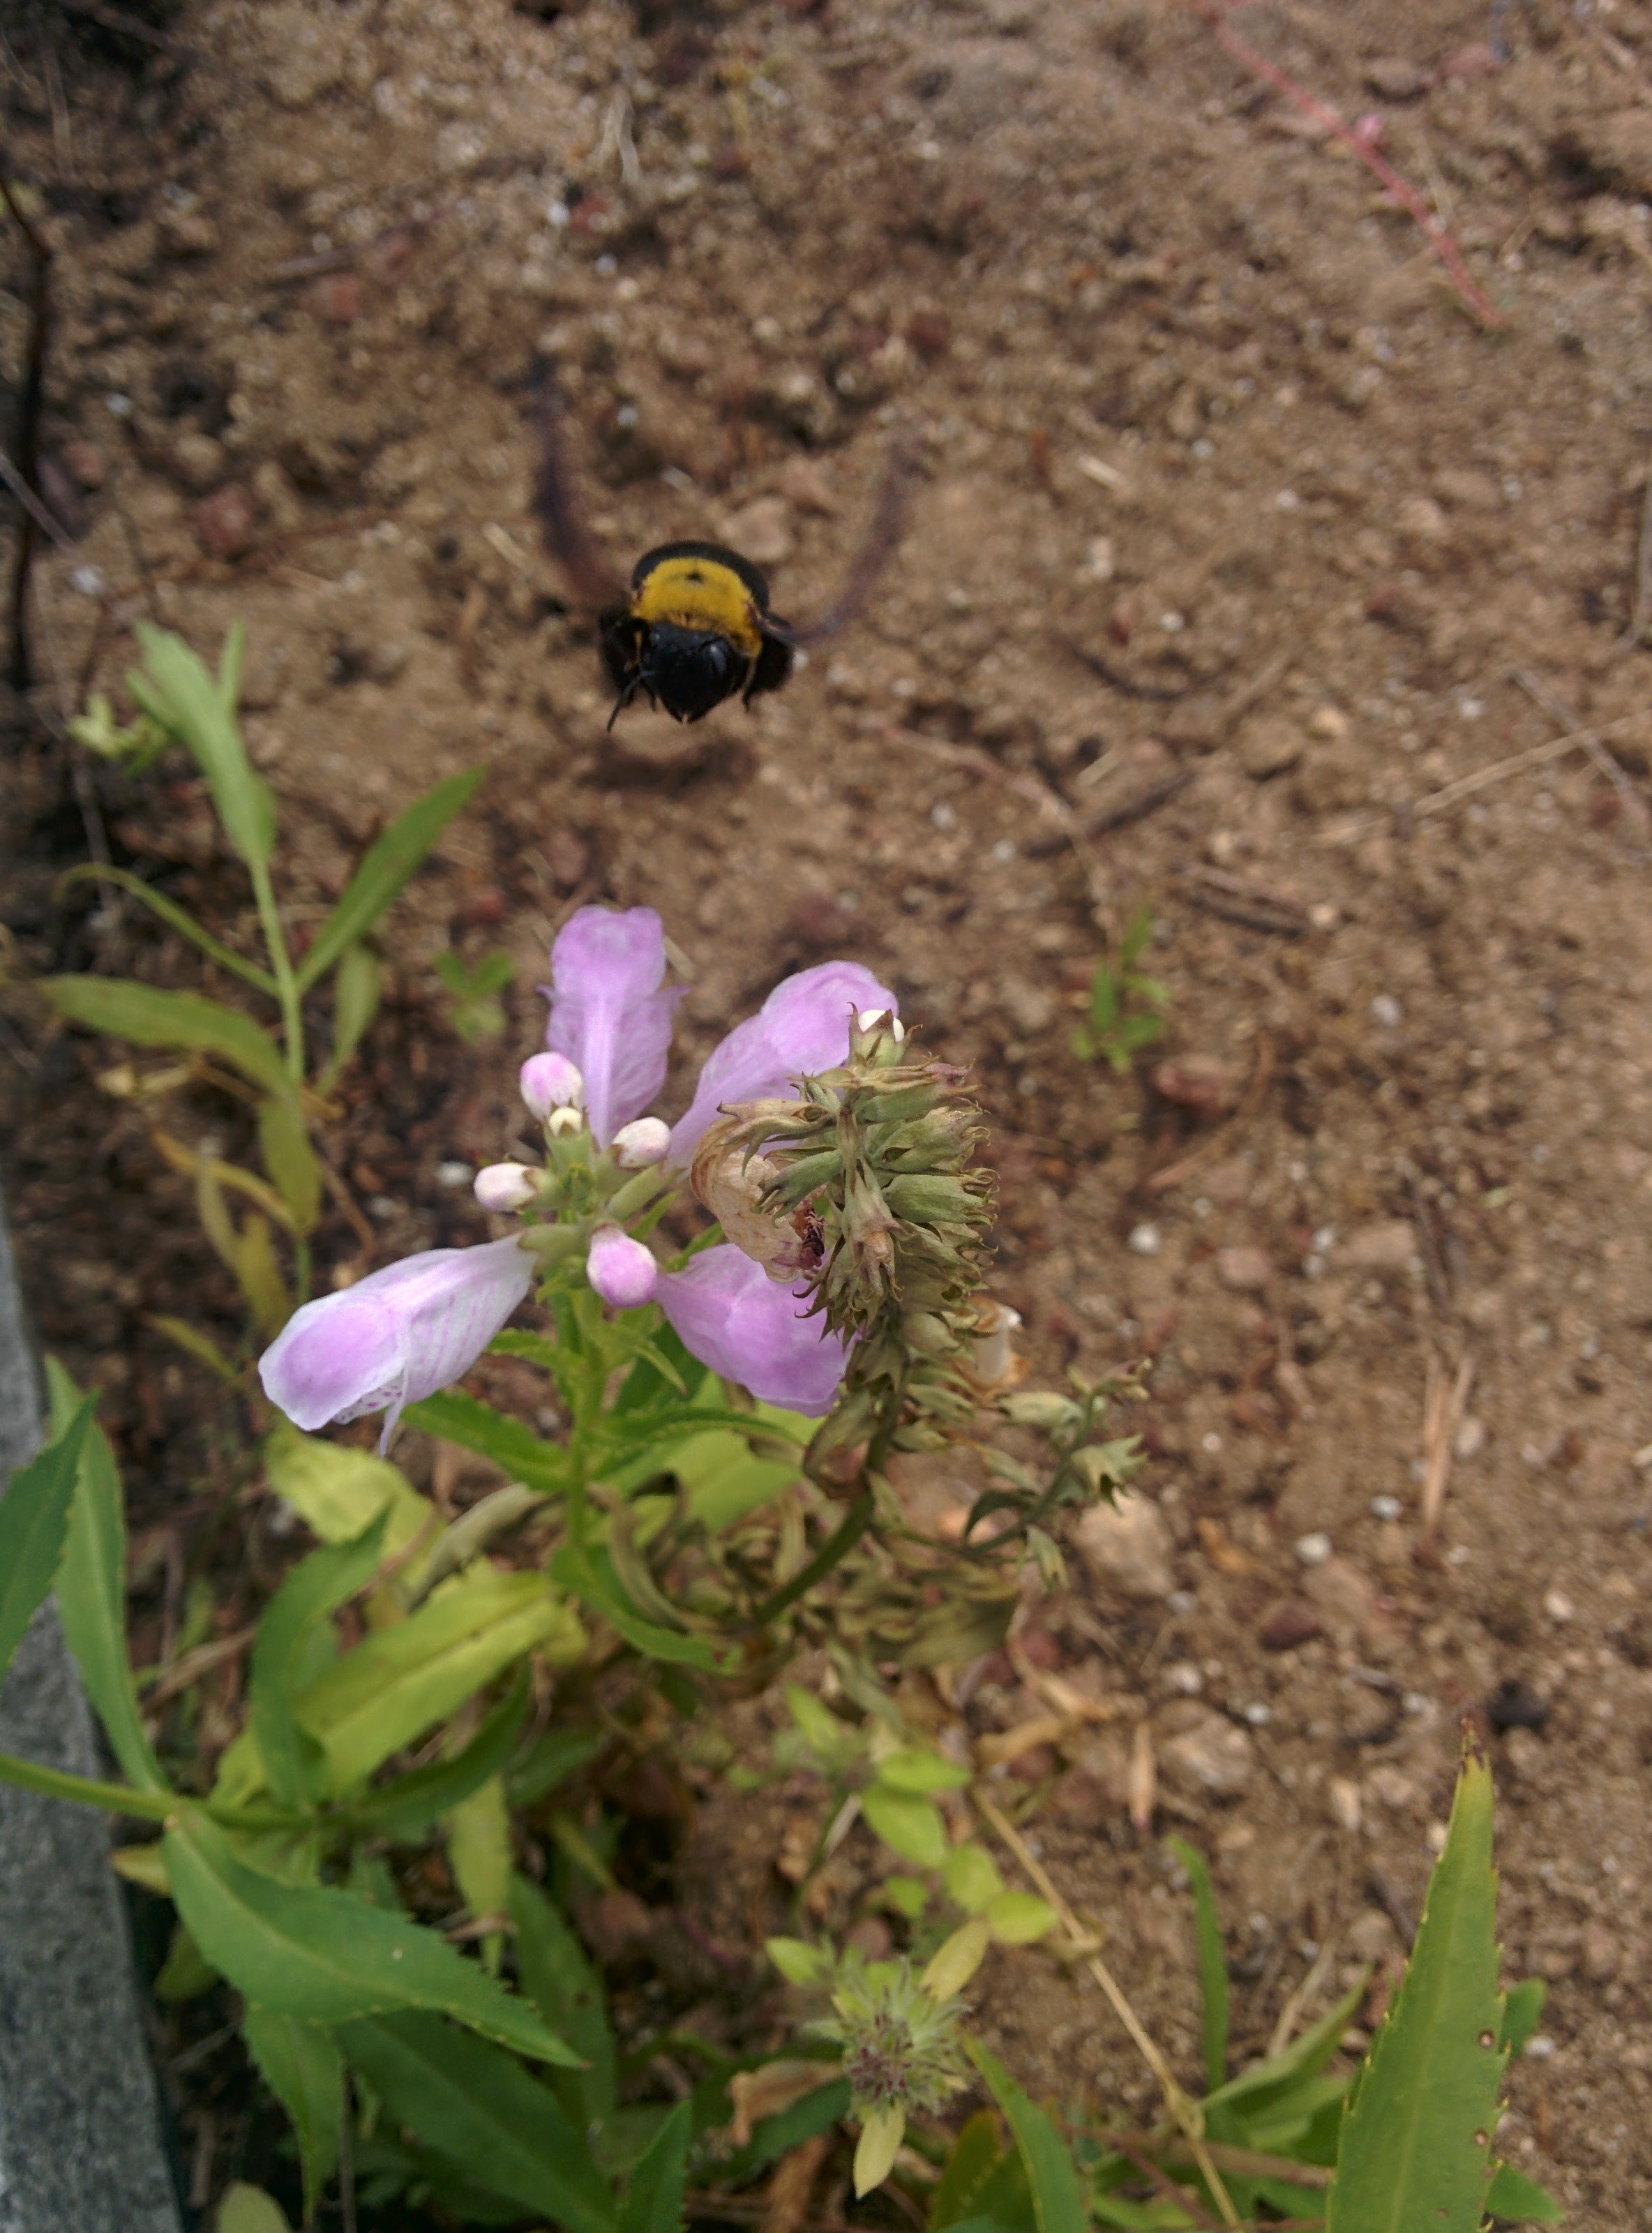 IMG_20150925_123608.jpg 꽃범의꼬리 꽃을 찾아온 검은색 대형 벌, 어리호박벌의 비행